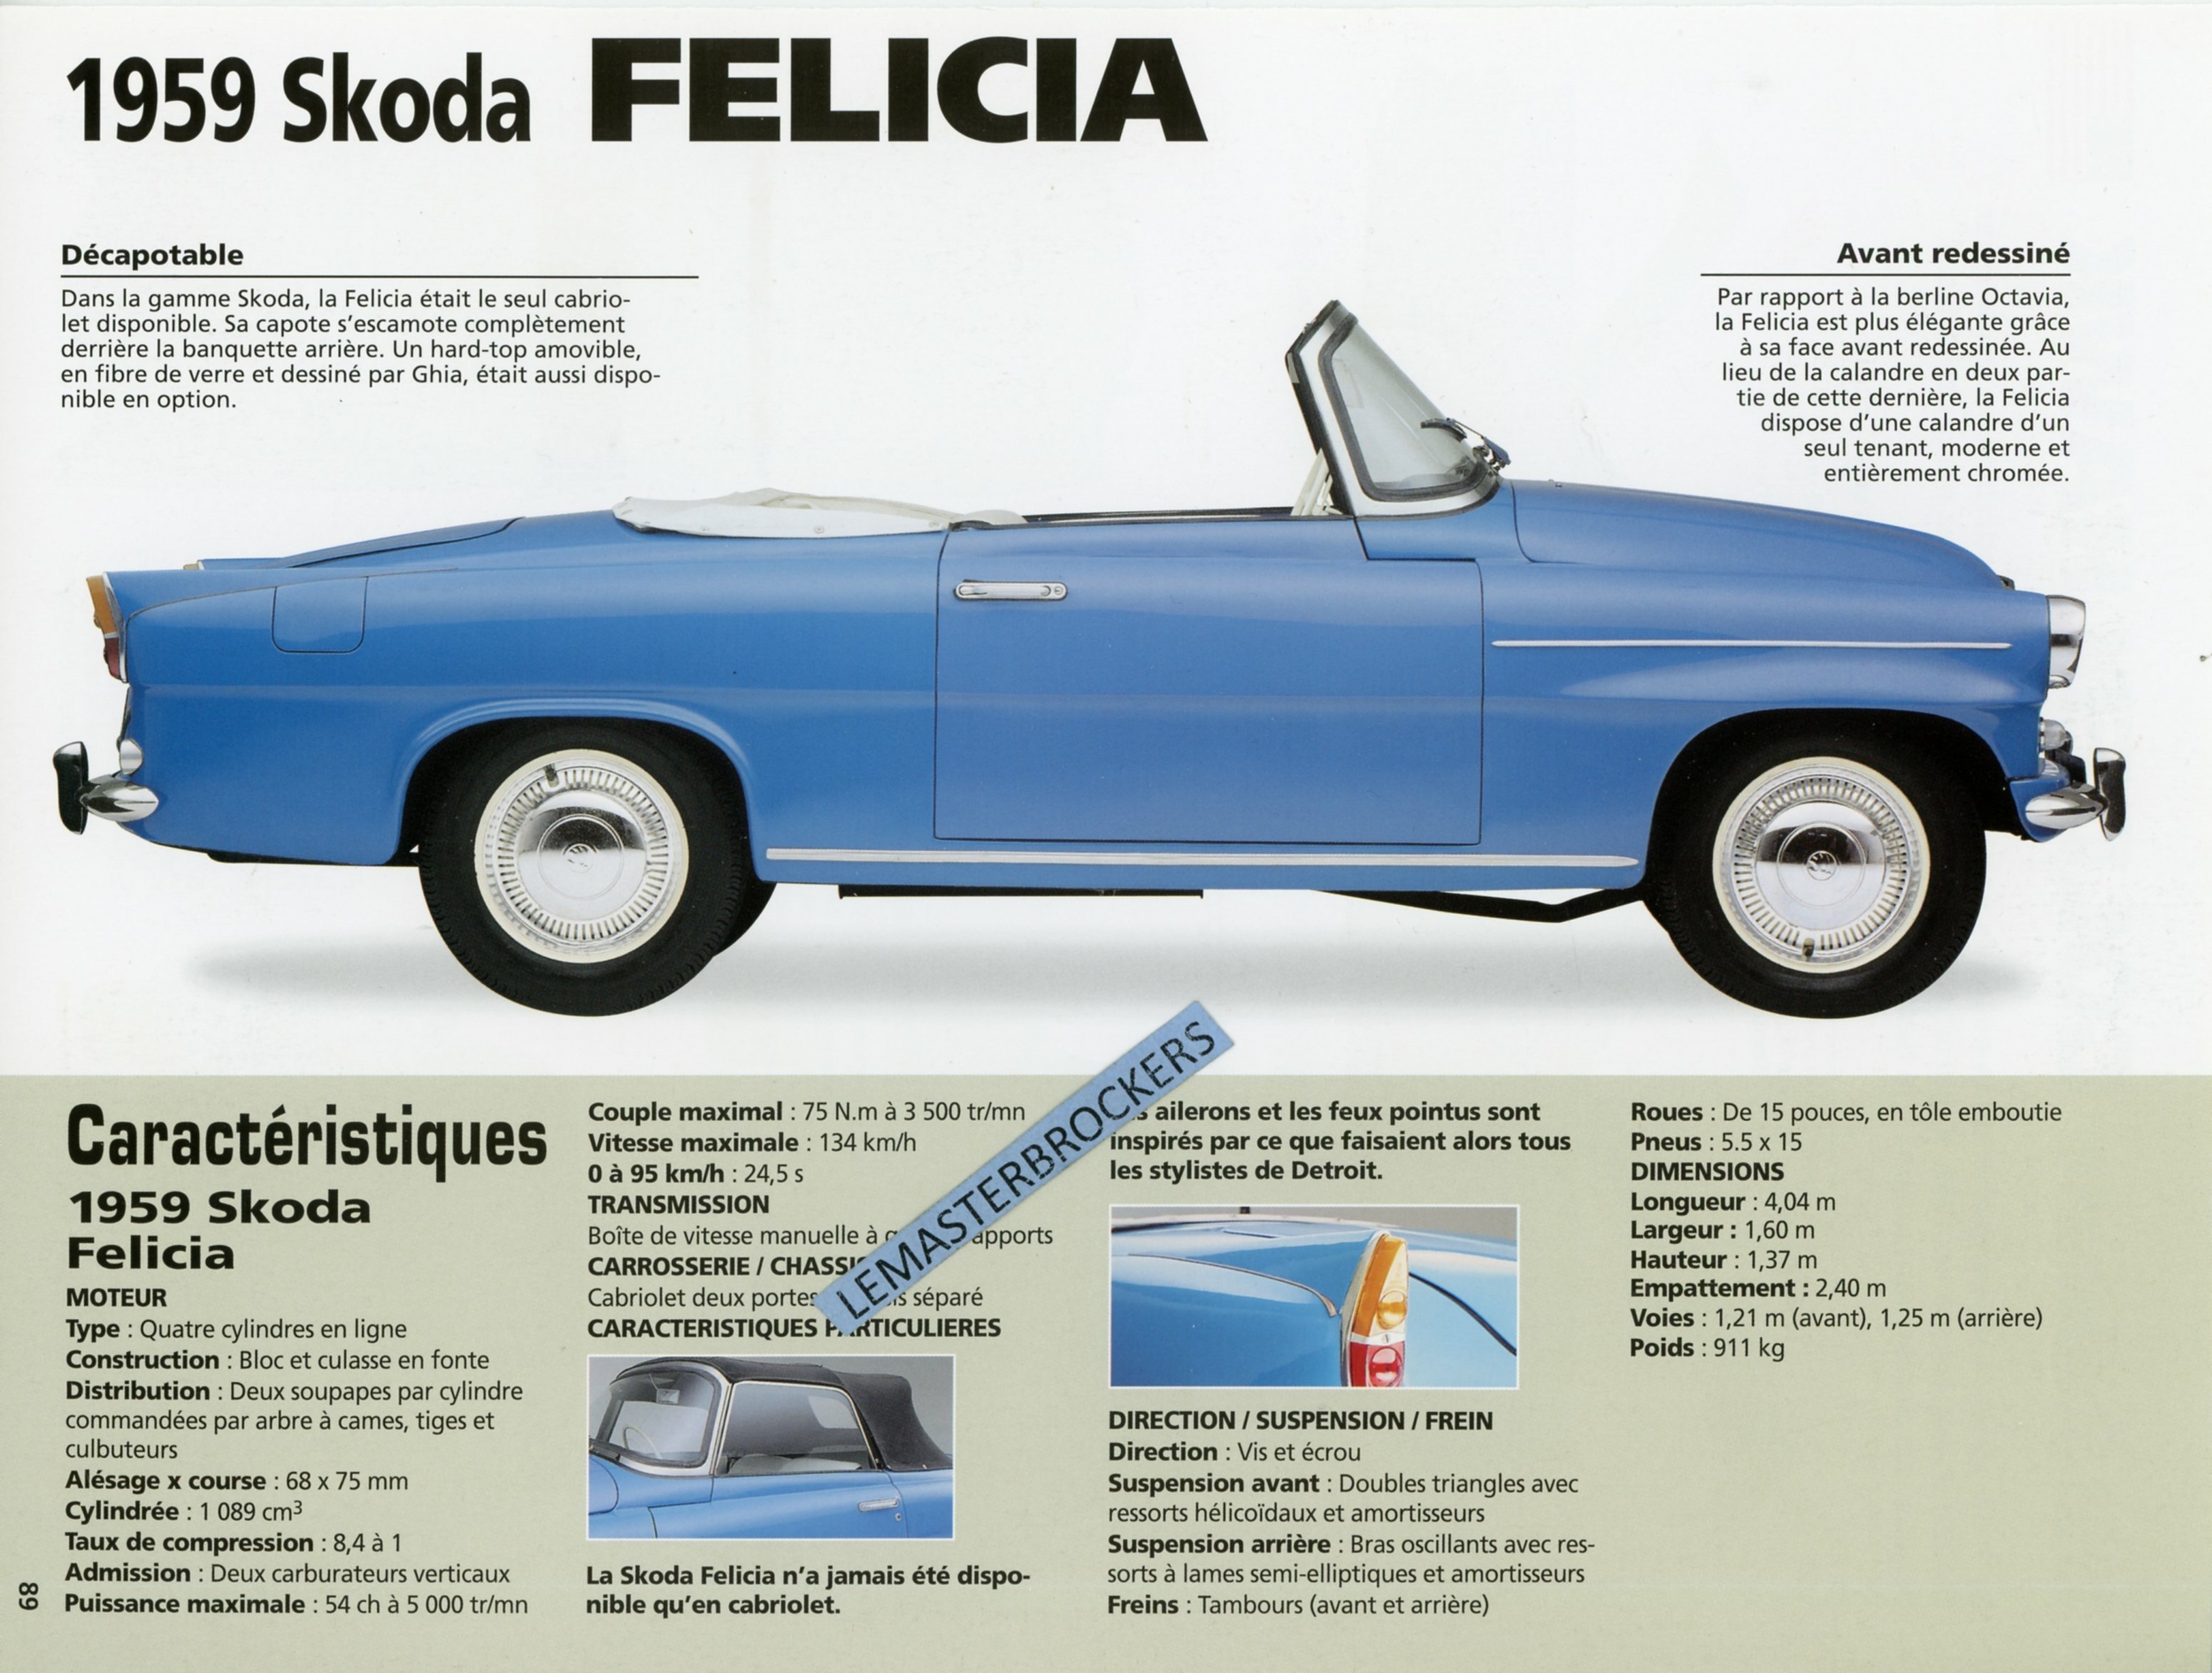 FICHE AUTO SKODA FELICIA 1959 LEMASTERBROCKERS